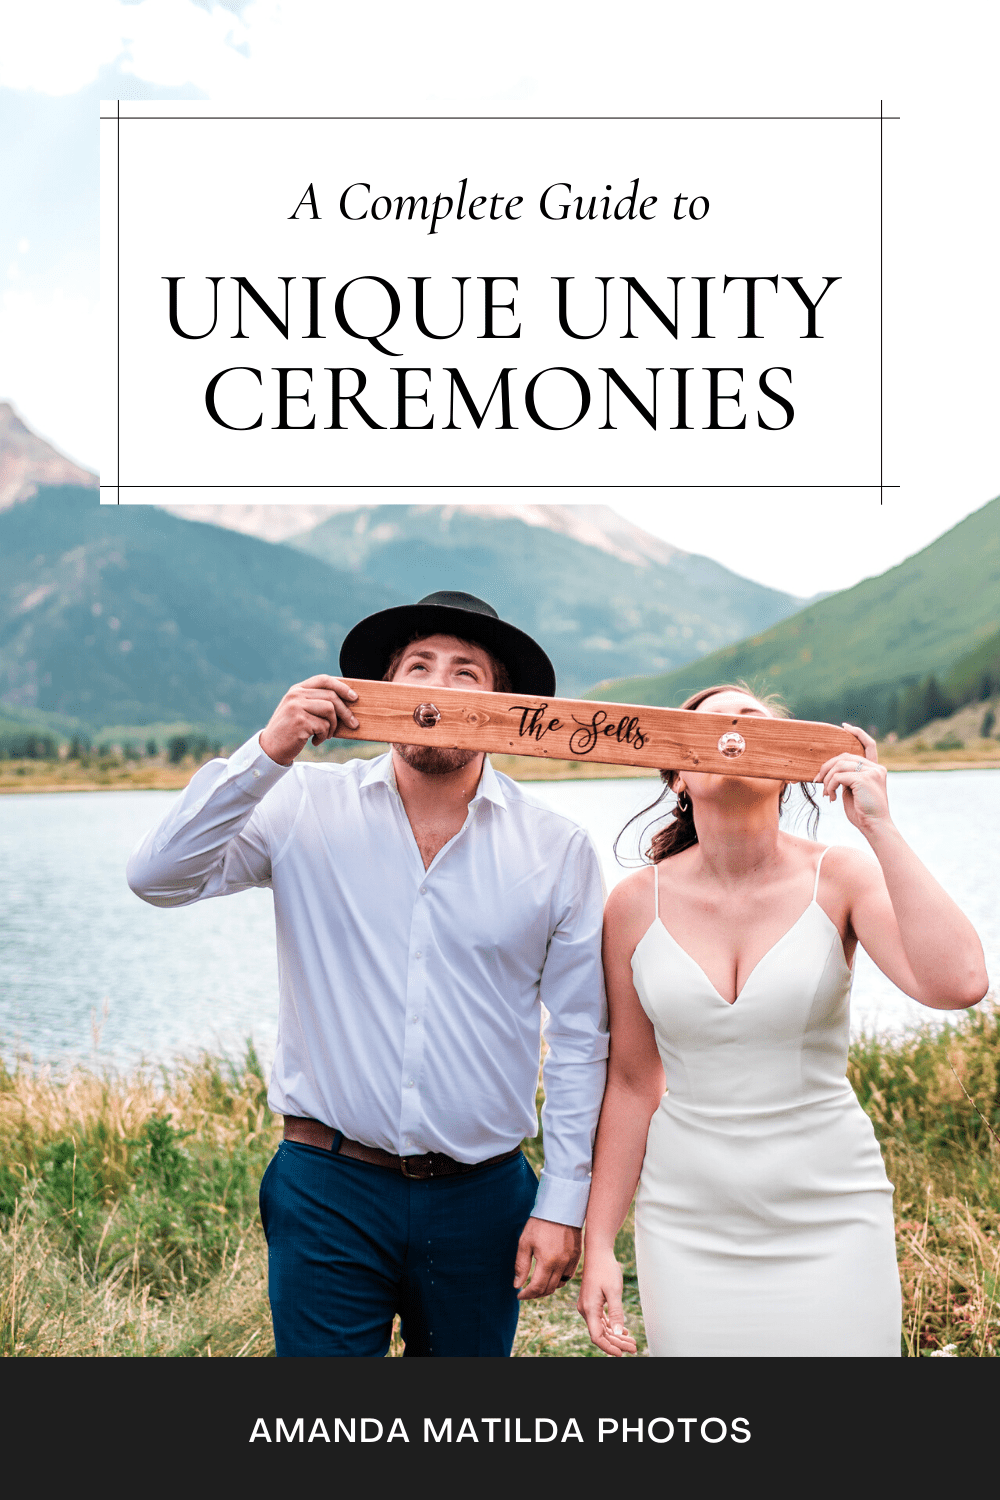 A Complete Guide to Unique Unity Ceremonies